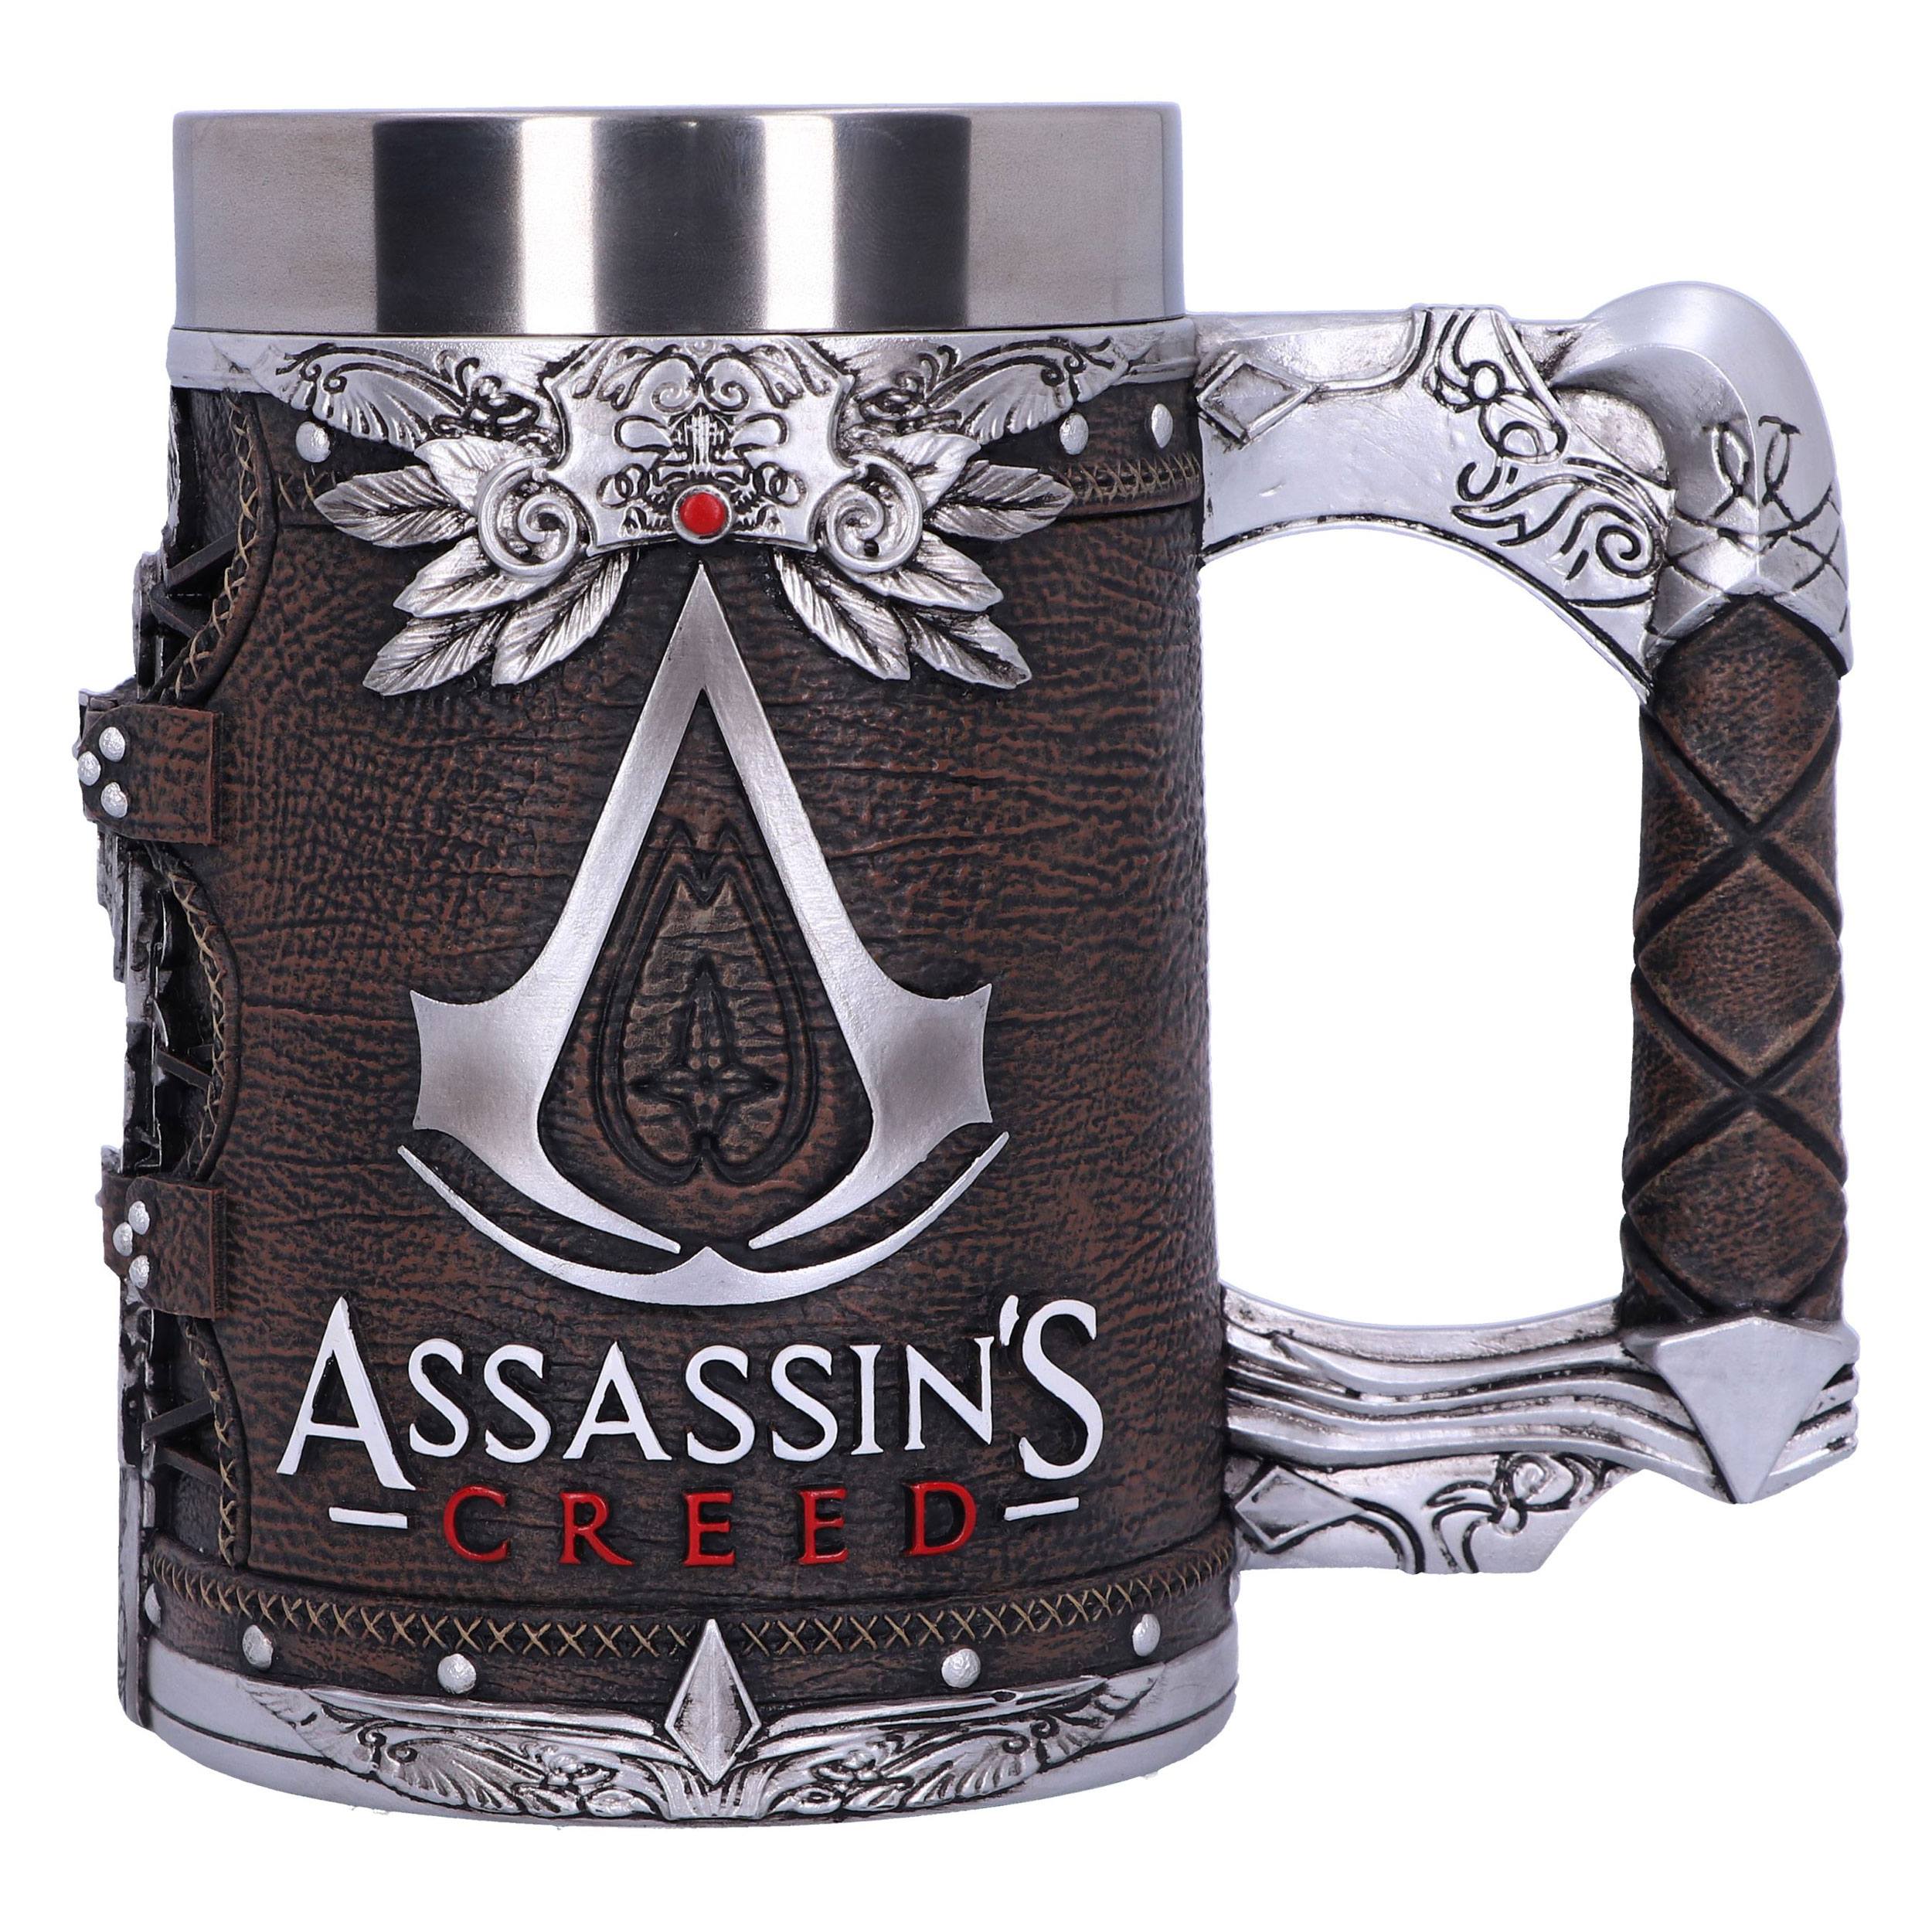 Assassin's Creed - Boccale della Confraternita.